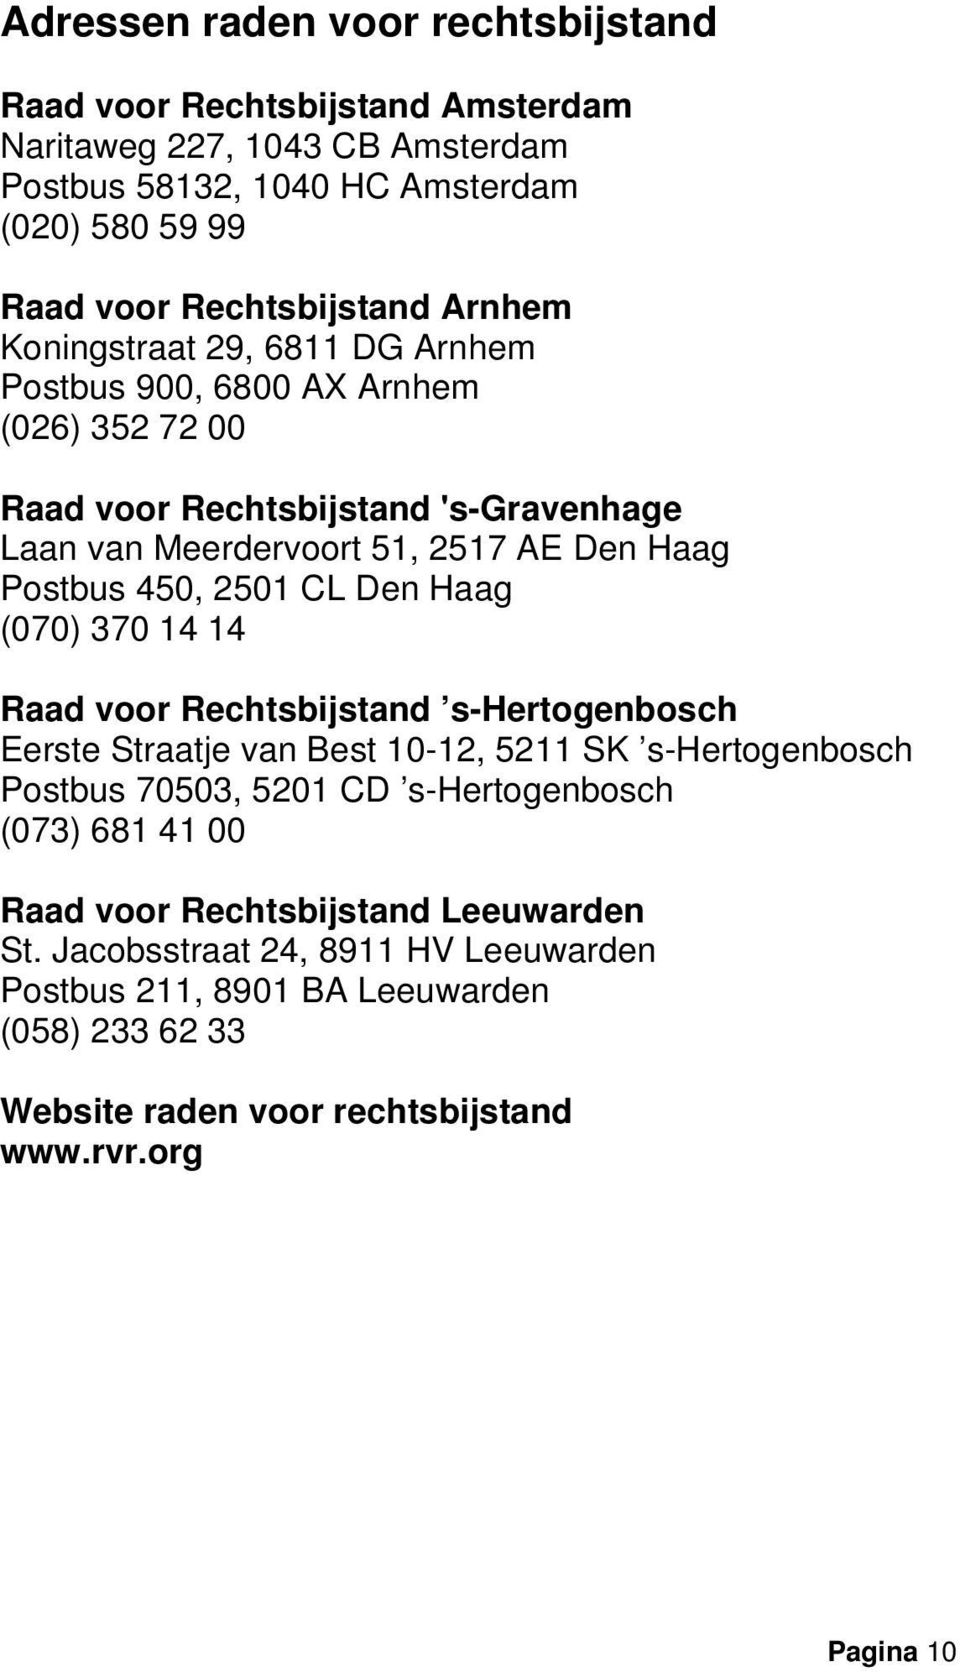 2501 CL Den Haag (070) 370 14 14 Raad voor Rechtsbijstand s-hertogenbosch Eerste Straatje van Best 10-12, 5211 SK s-hertogenbosch Postbus 70503, 5201 CD s-hertogenbosch (073) 681